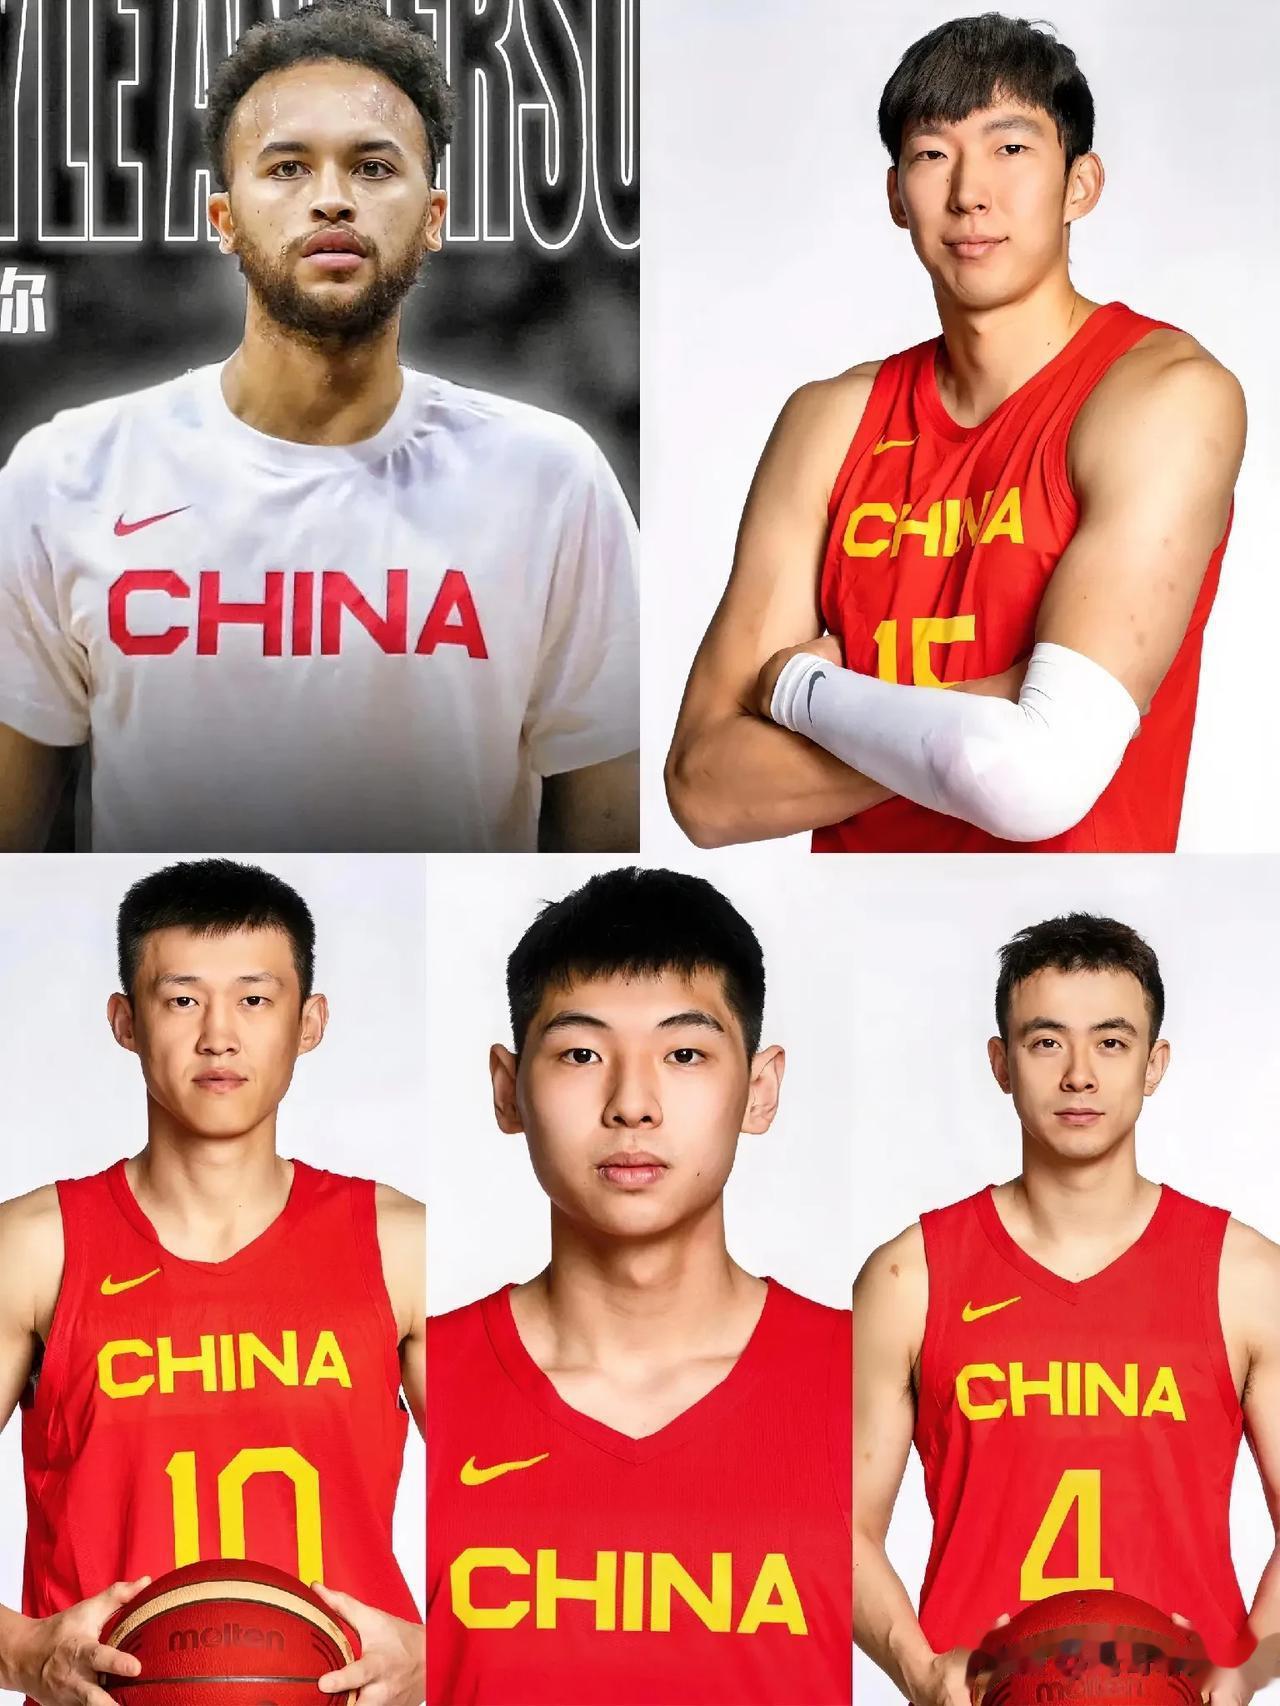 中国男篮史上最强首发，没有之一！
【周琦】:攻防俱佳，尤其防守端，堪称中国篮坛最